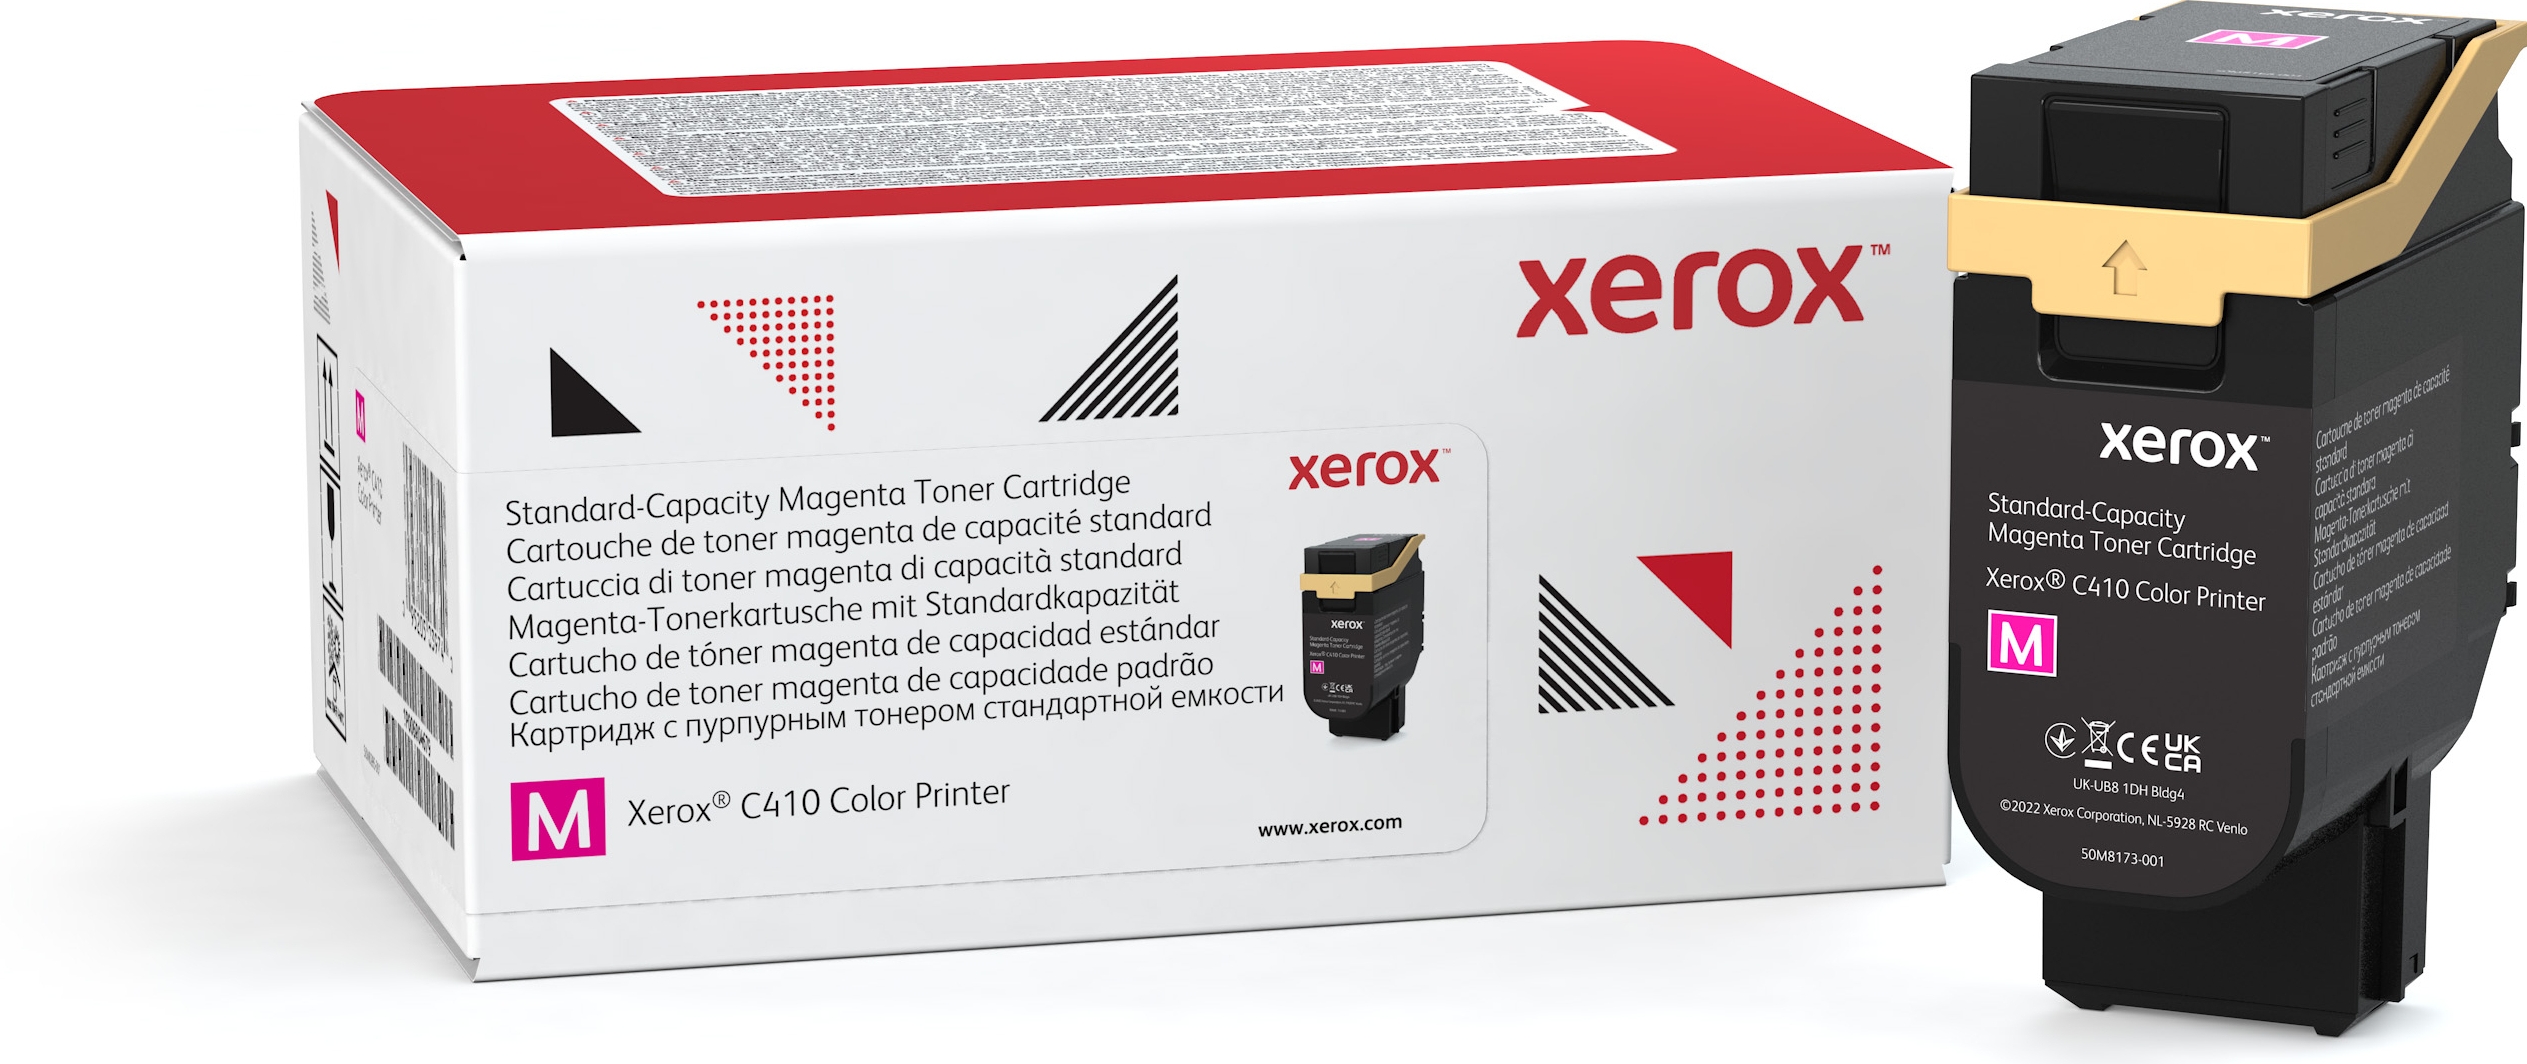 Xerox VersaLink C410/C415 cassette magenta toner standaardcapaciteit (2.000 pagina's), 2000 pagina's, Magenta, 1 stuk(s)